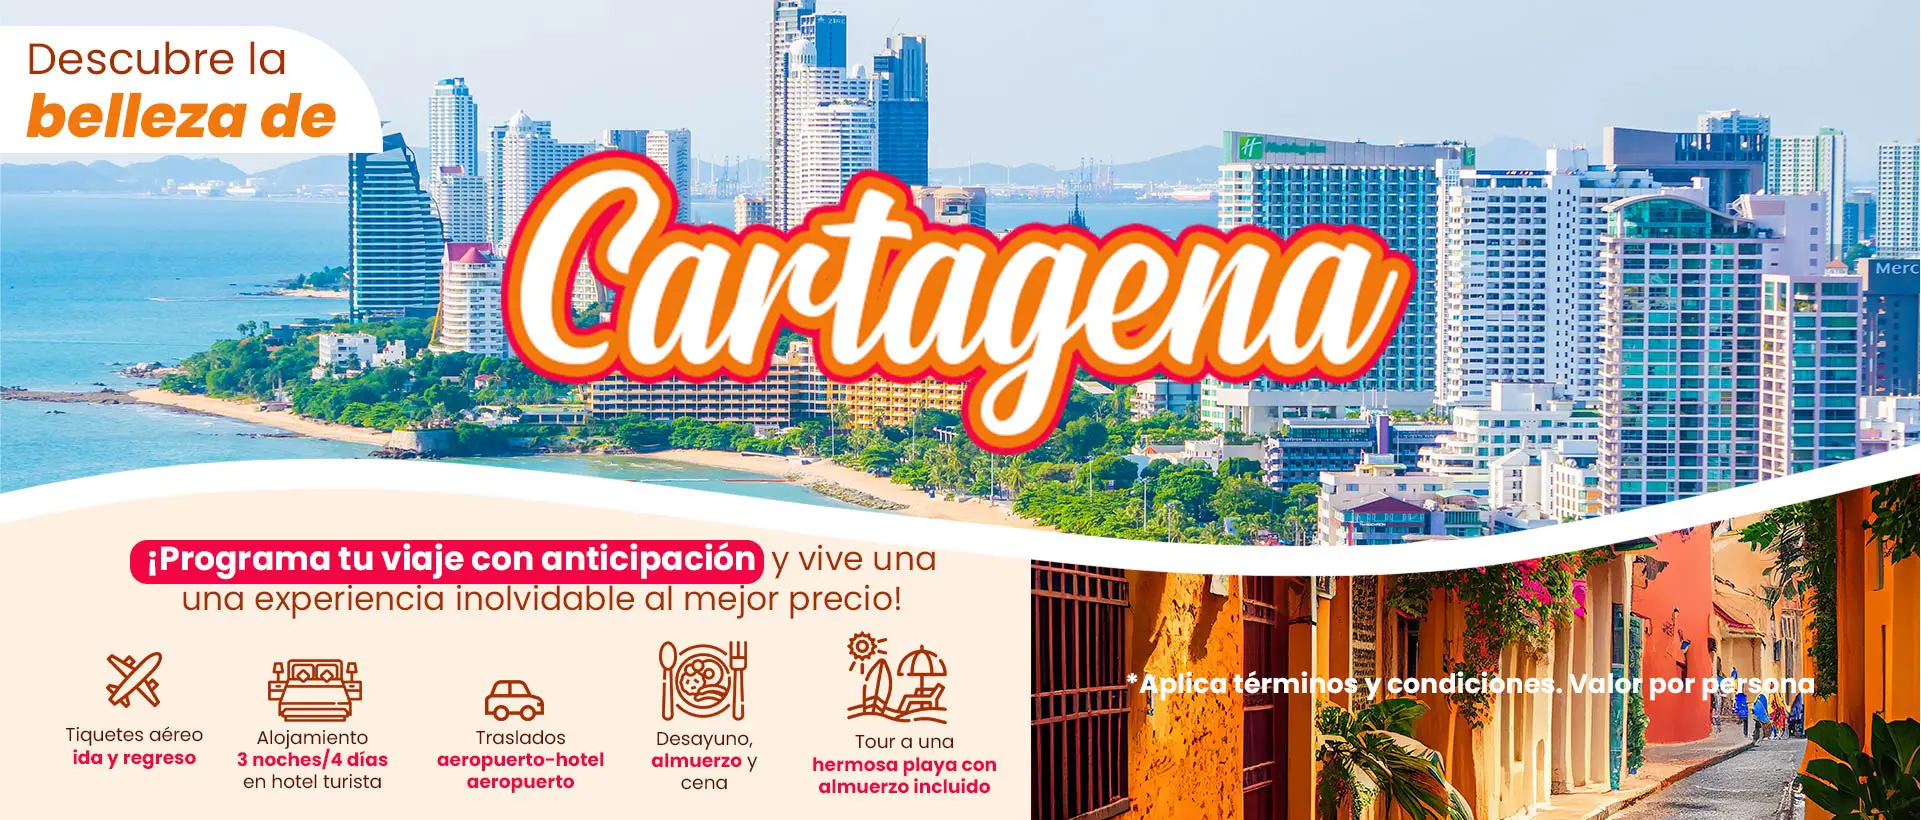 Formulario Cartagena